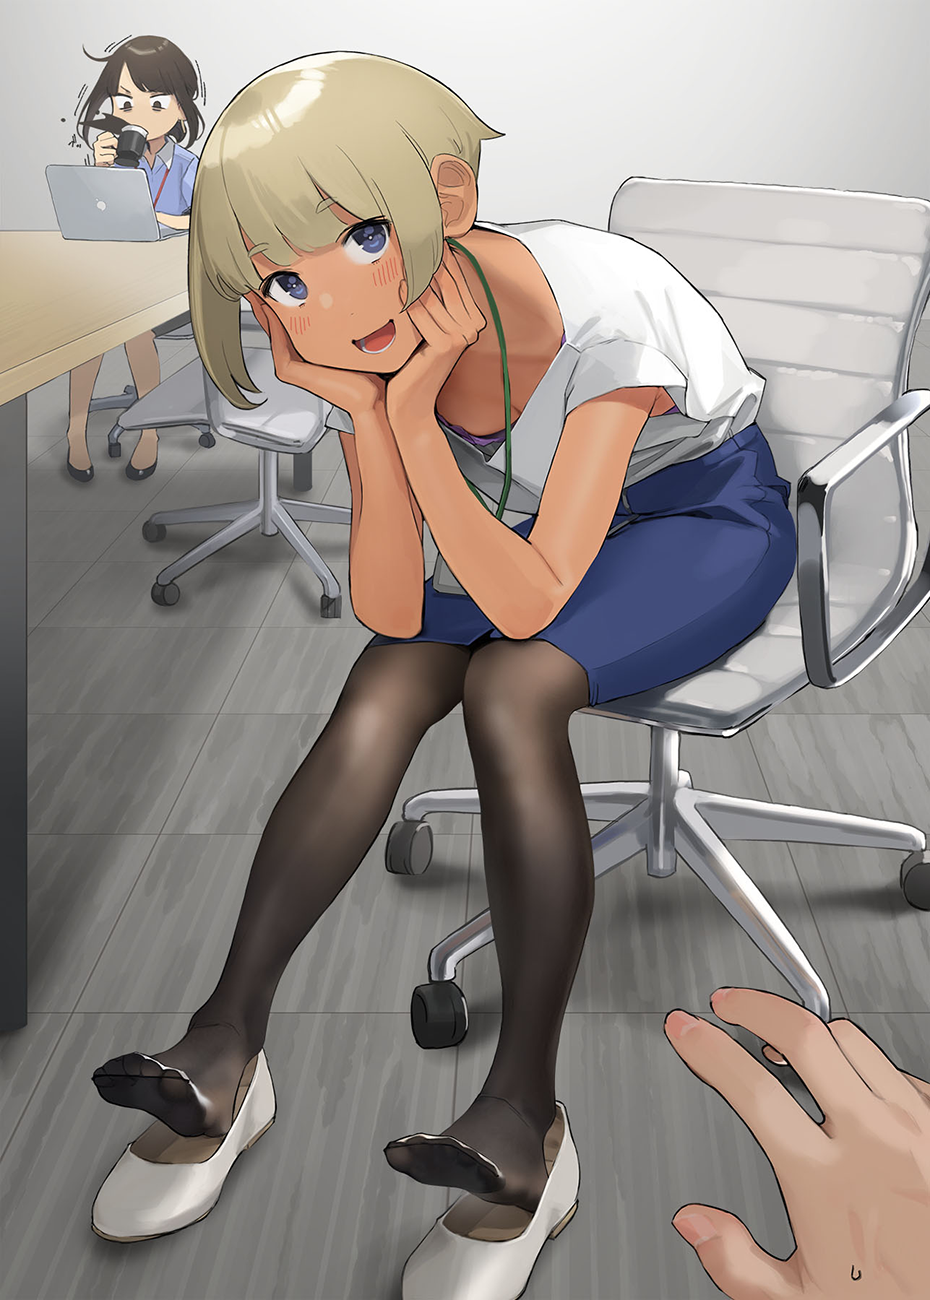 Anime Anime Girls Original Characters Short Hair Blonde Yomu Vertical Artwork Office Office Girl POV 930x1300